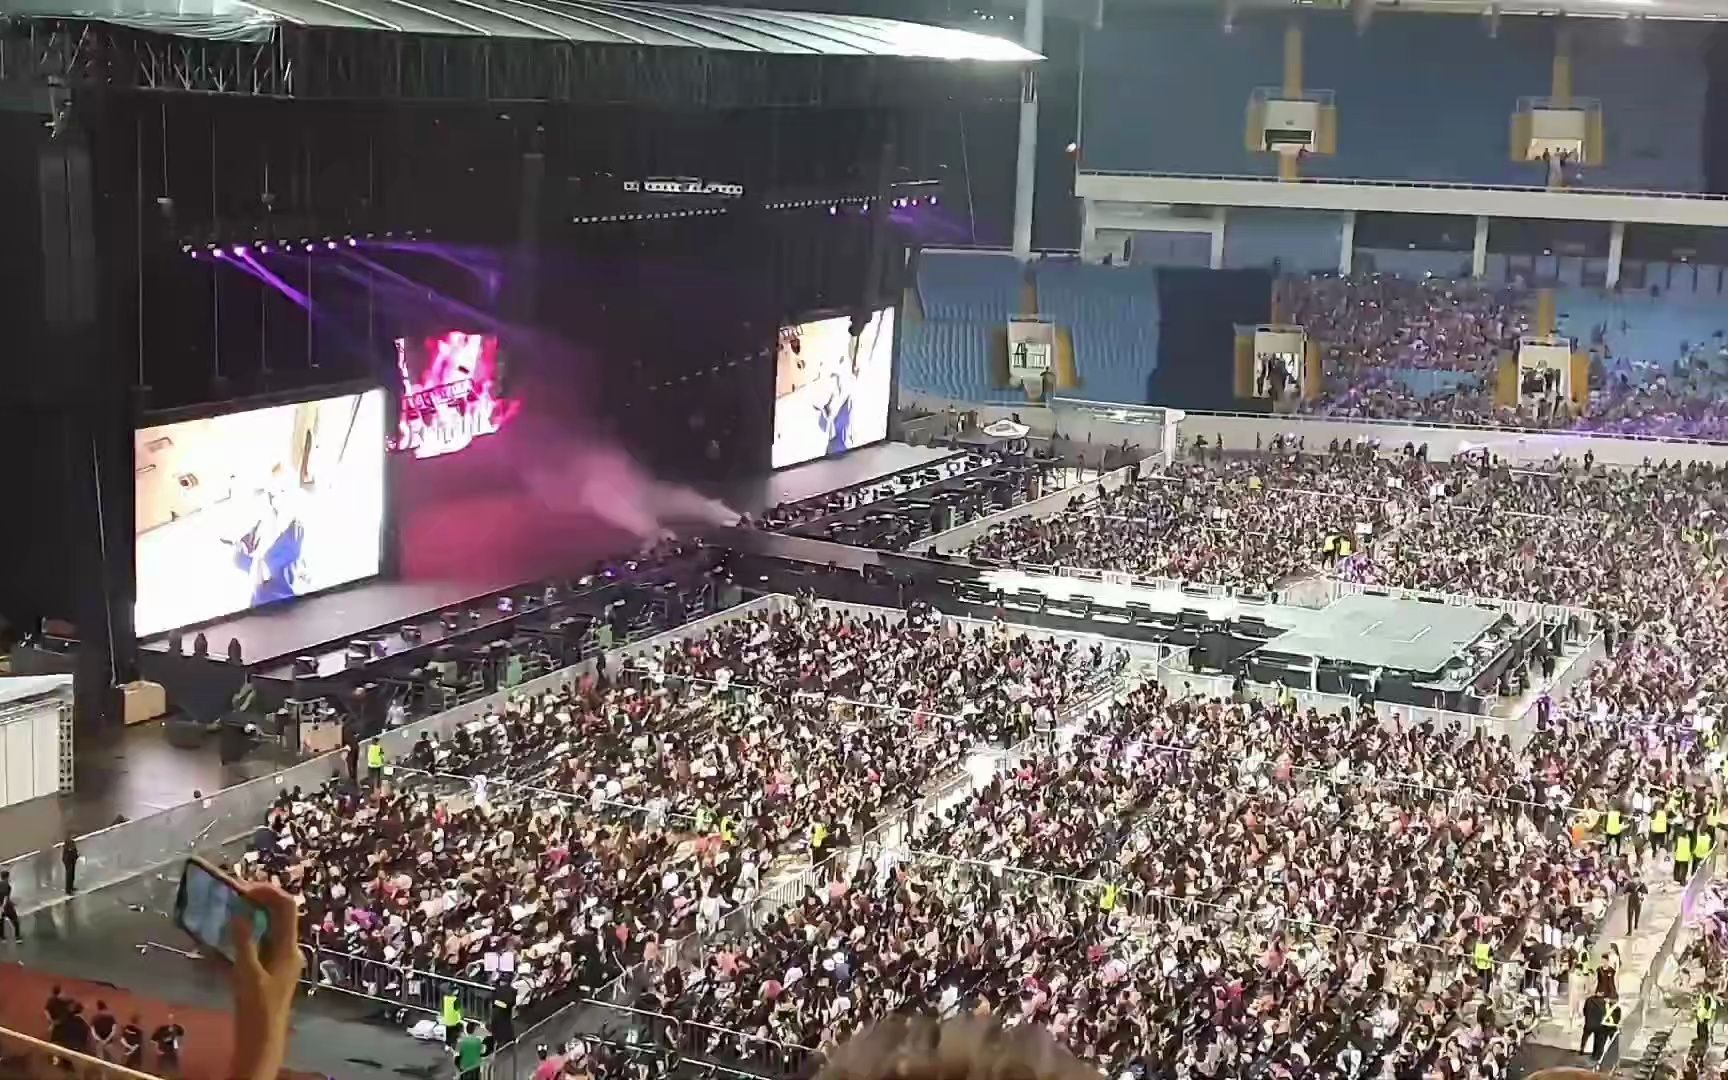 BLACKPINK 越南巡演第二天 全场粉丝随机跟唱歌曲 等待演出开始